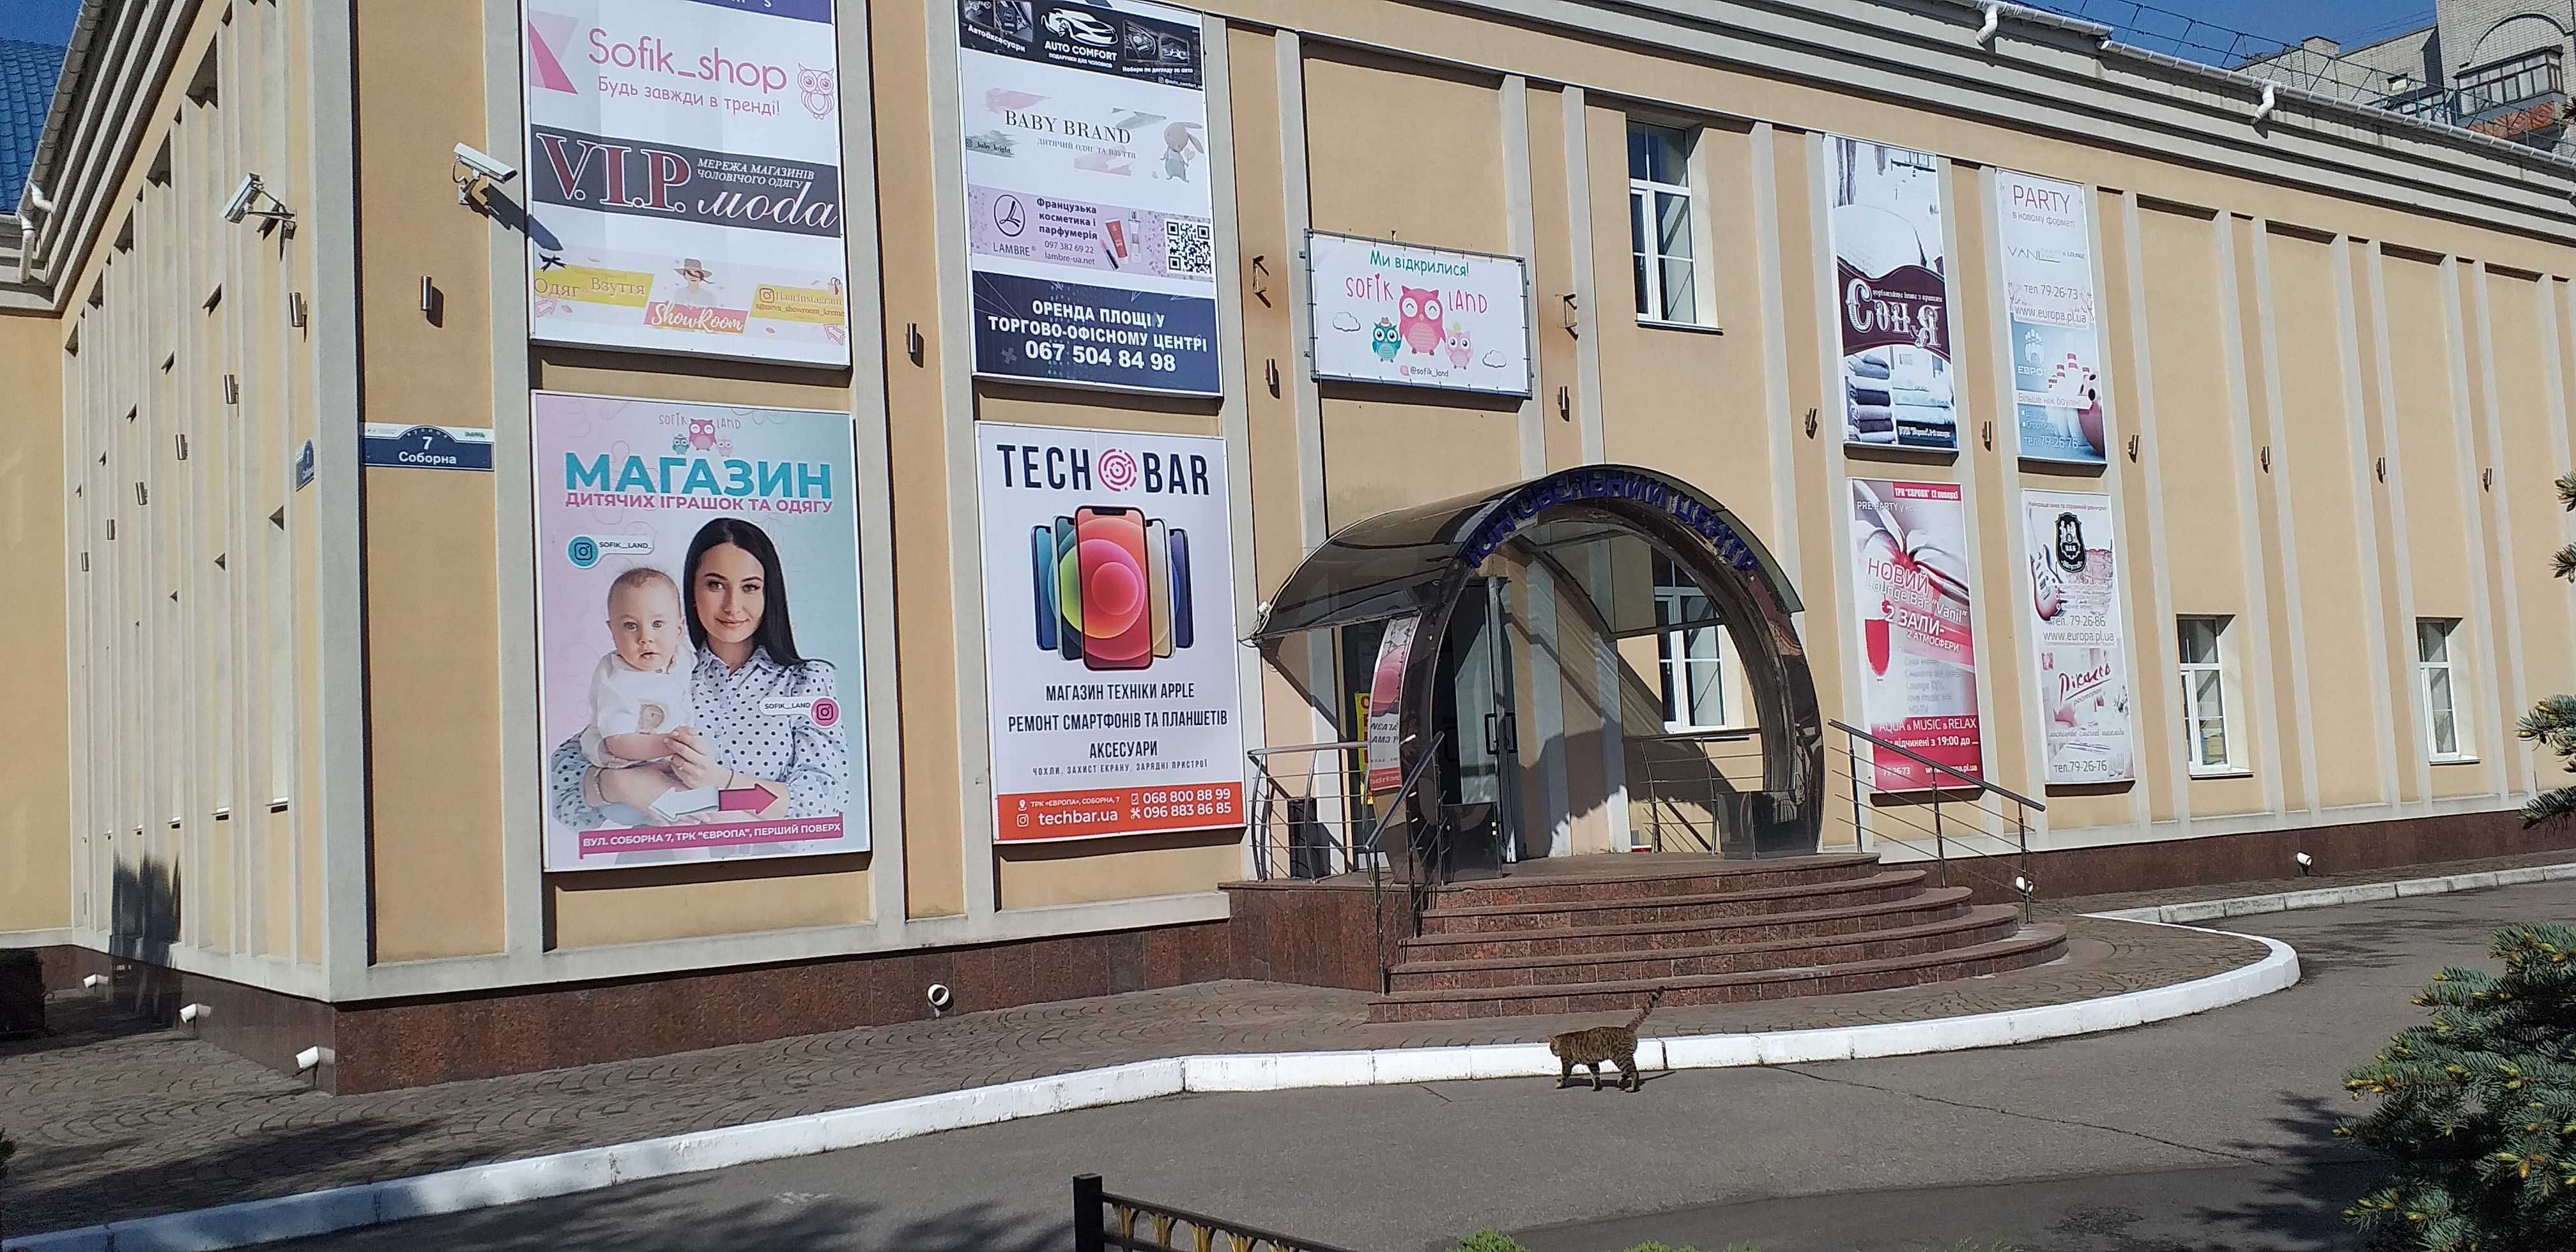 Сдается торговая площадь в центре города без комиссии в ТРК "ЕВРОПА"